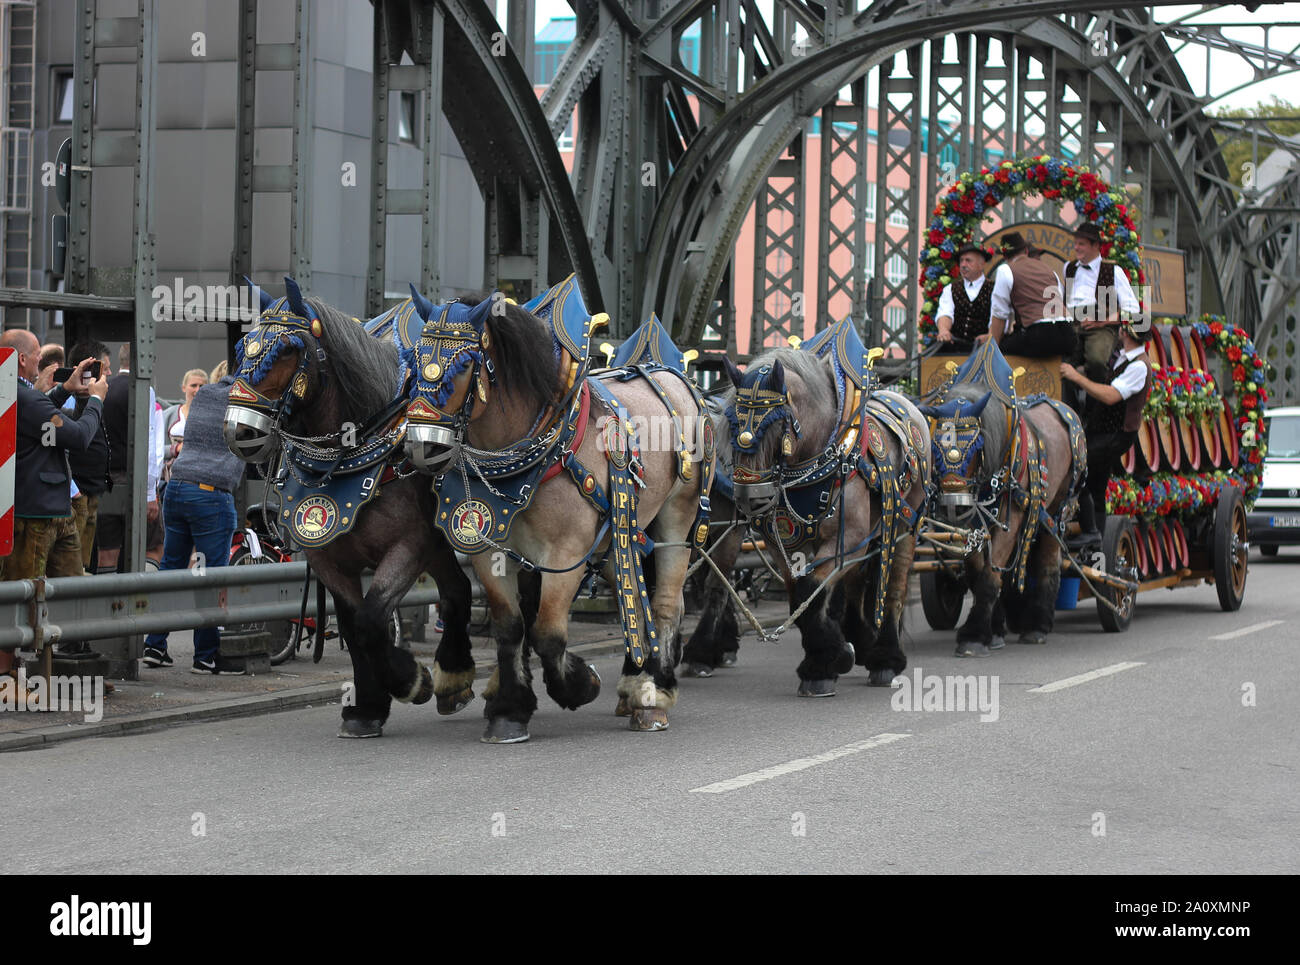 Pferdeverkehr mit kaltblütigen Brauereipferden, Transport von Bierfässern. Kaltblut-Harnessed. Stockfoto